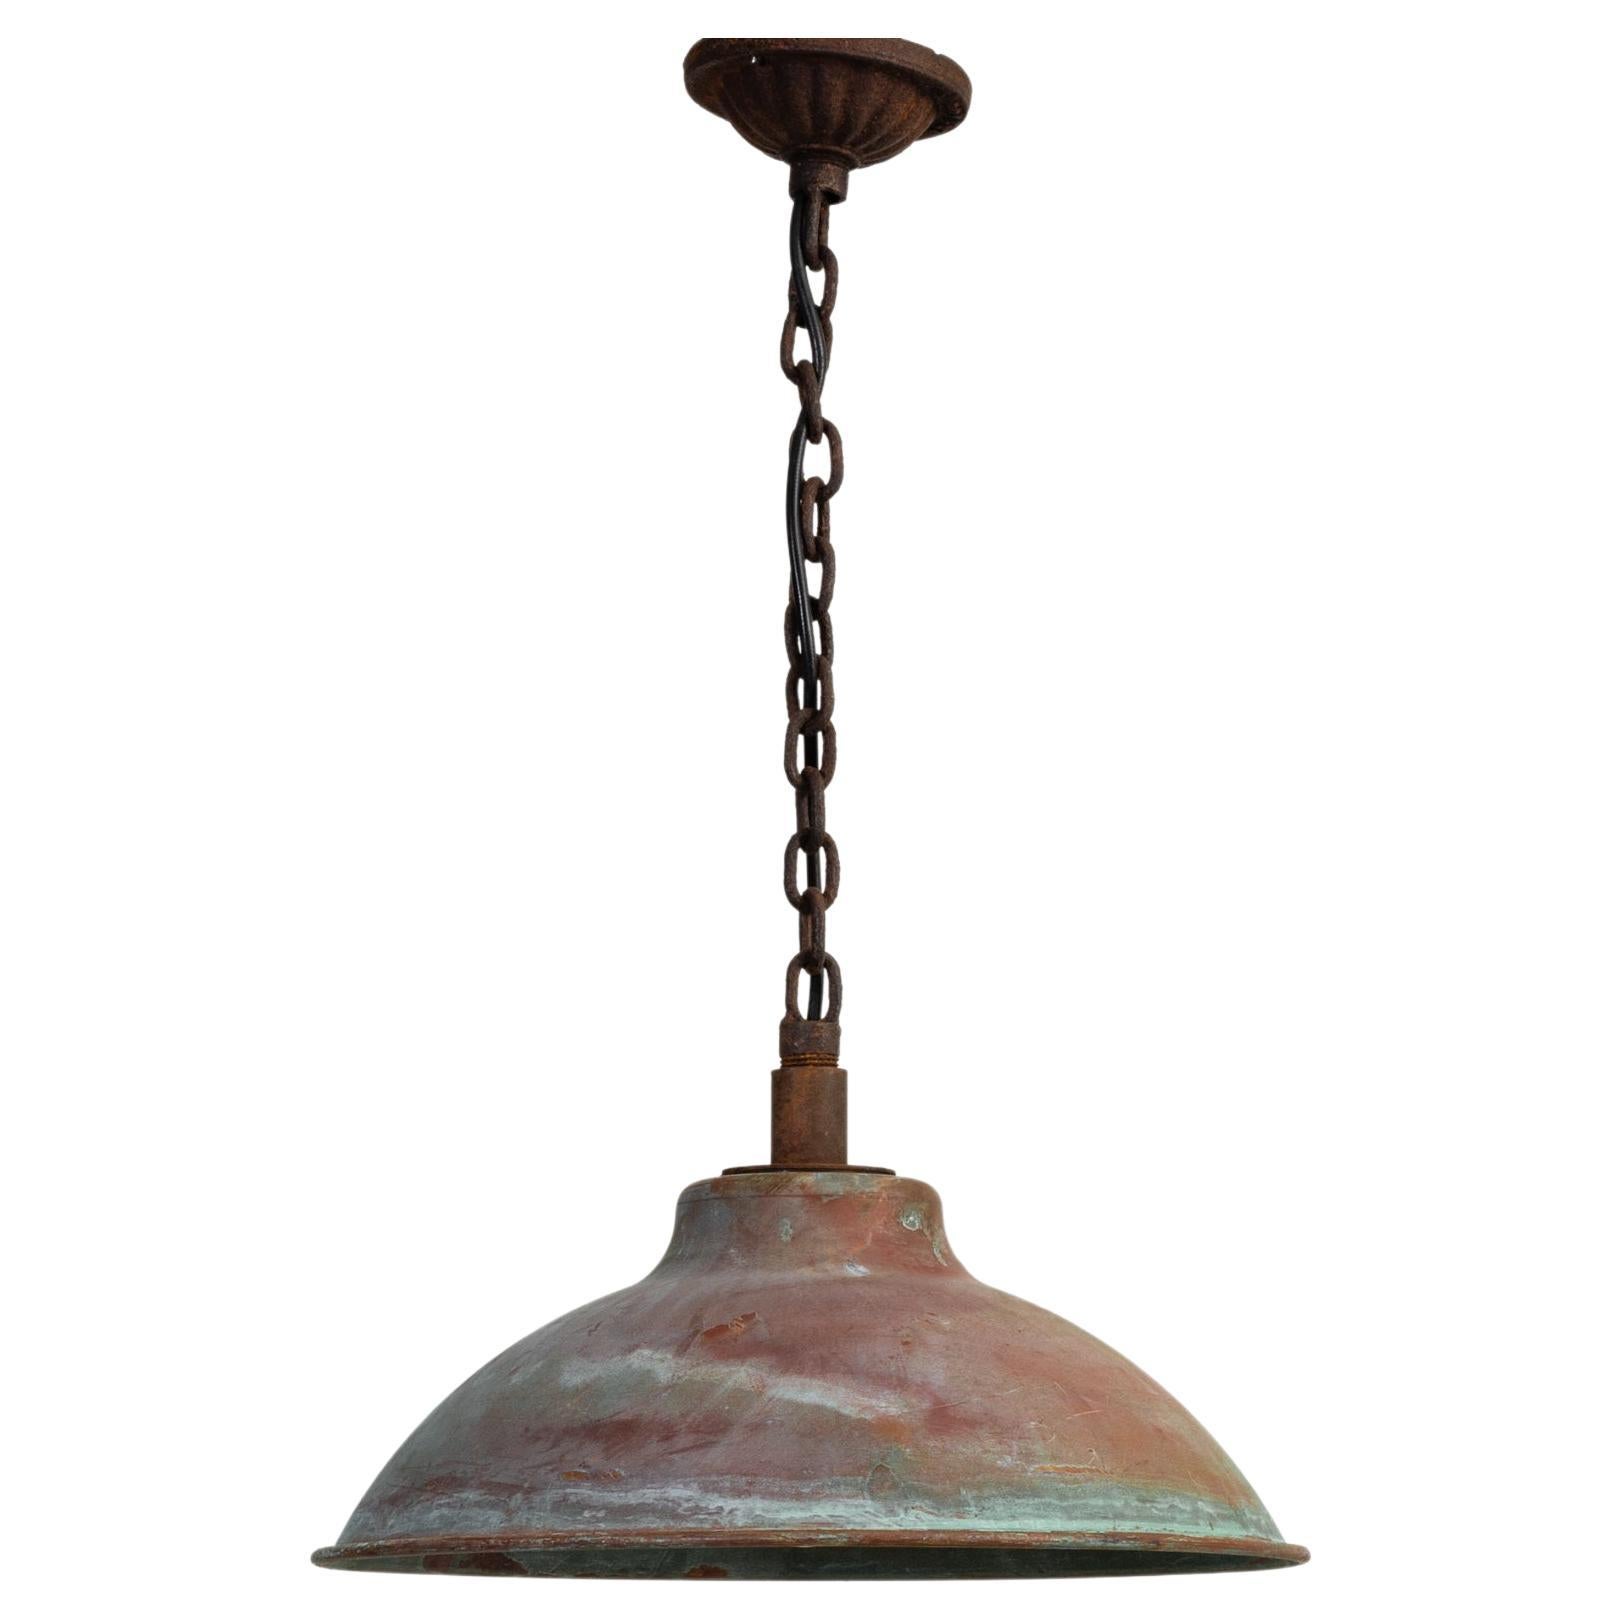 Vintage Central European Metal Industrial Lamp